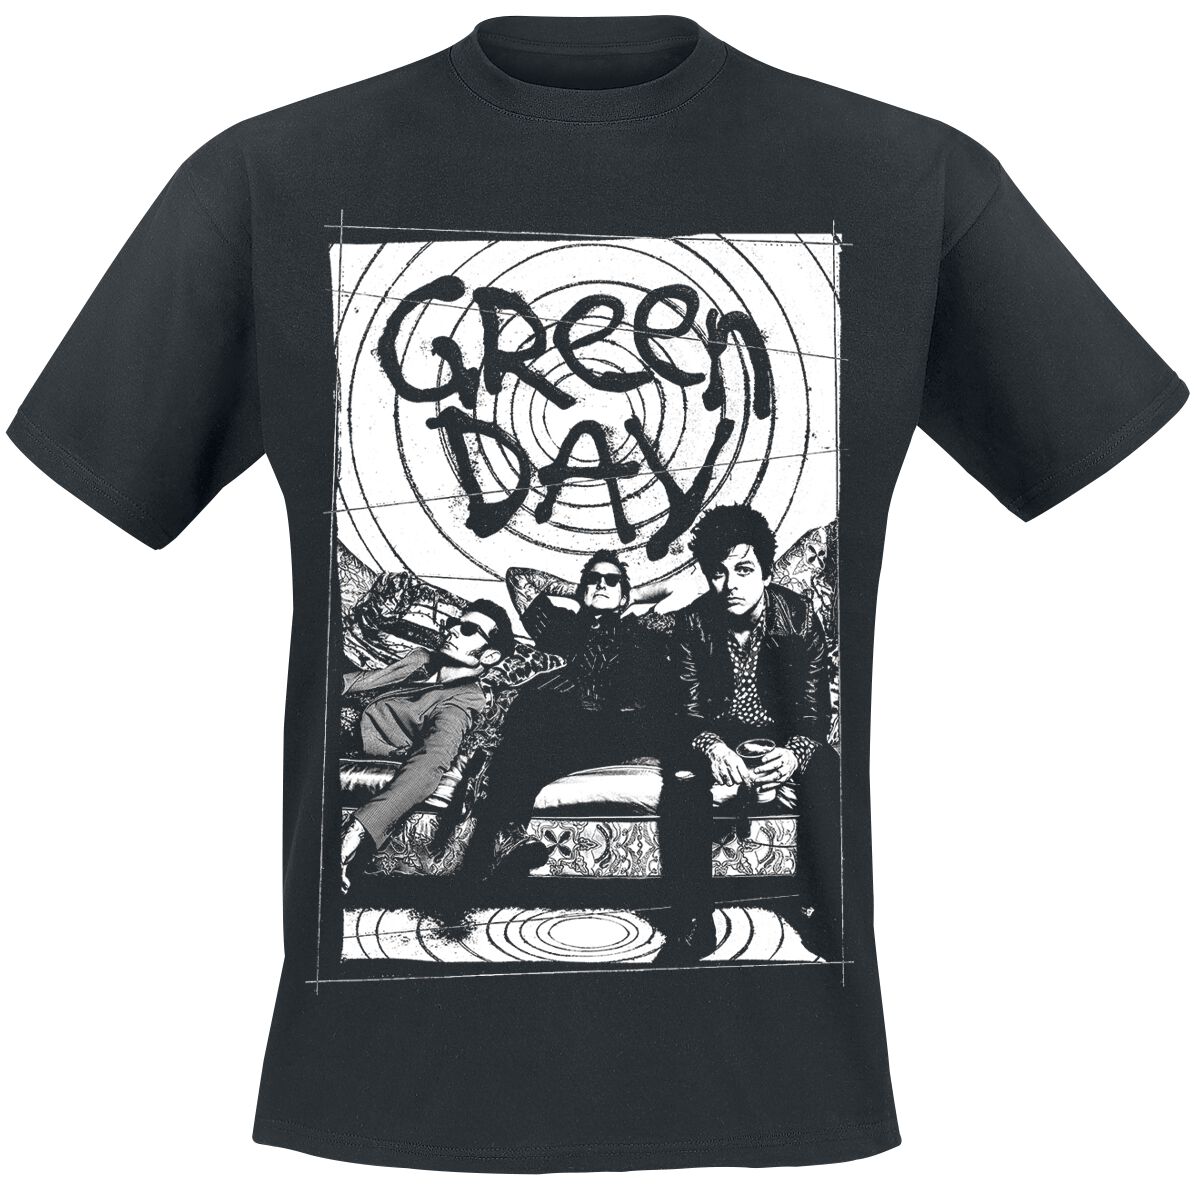 T-Shirt Manches courtes de Green Day - Couch Photo - S à XXL - pour Homme - noir